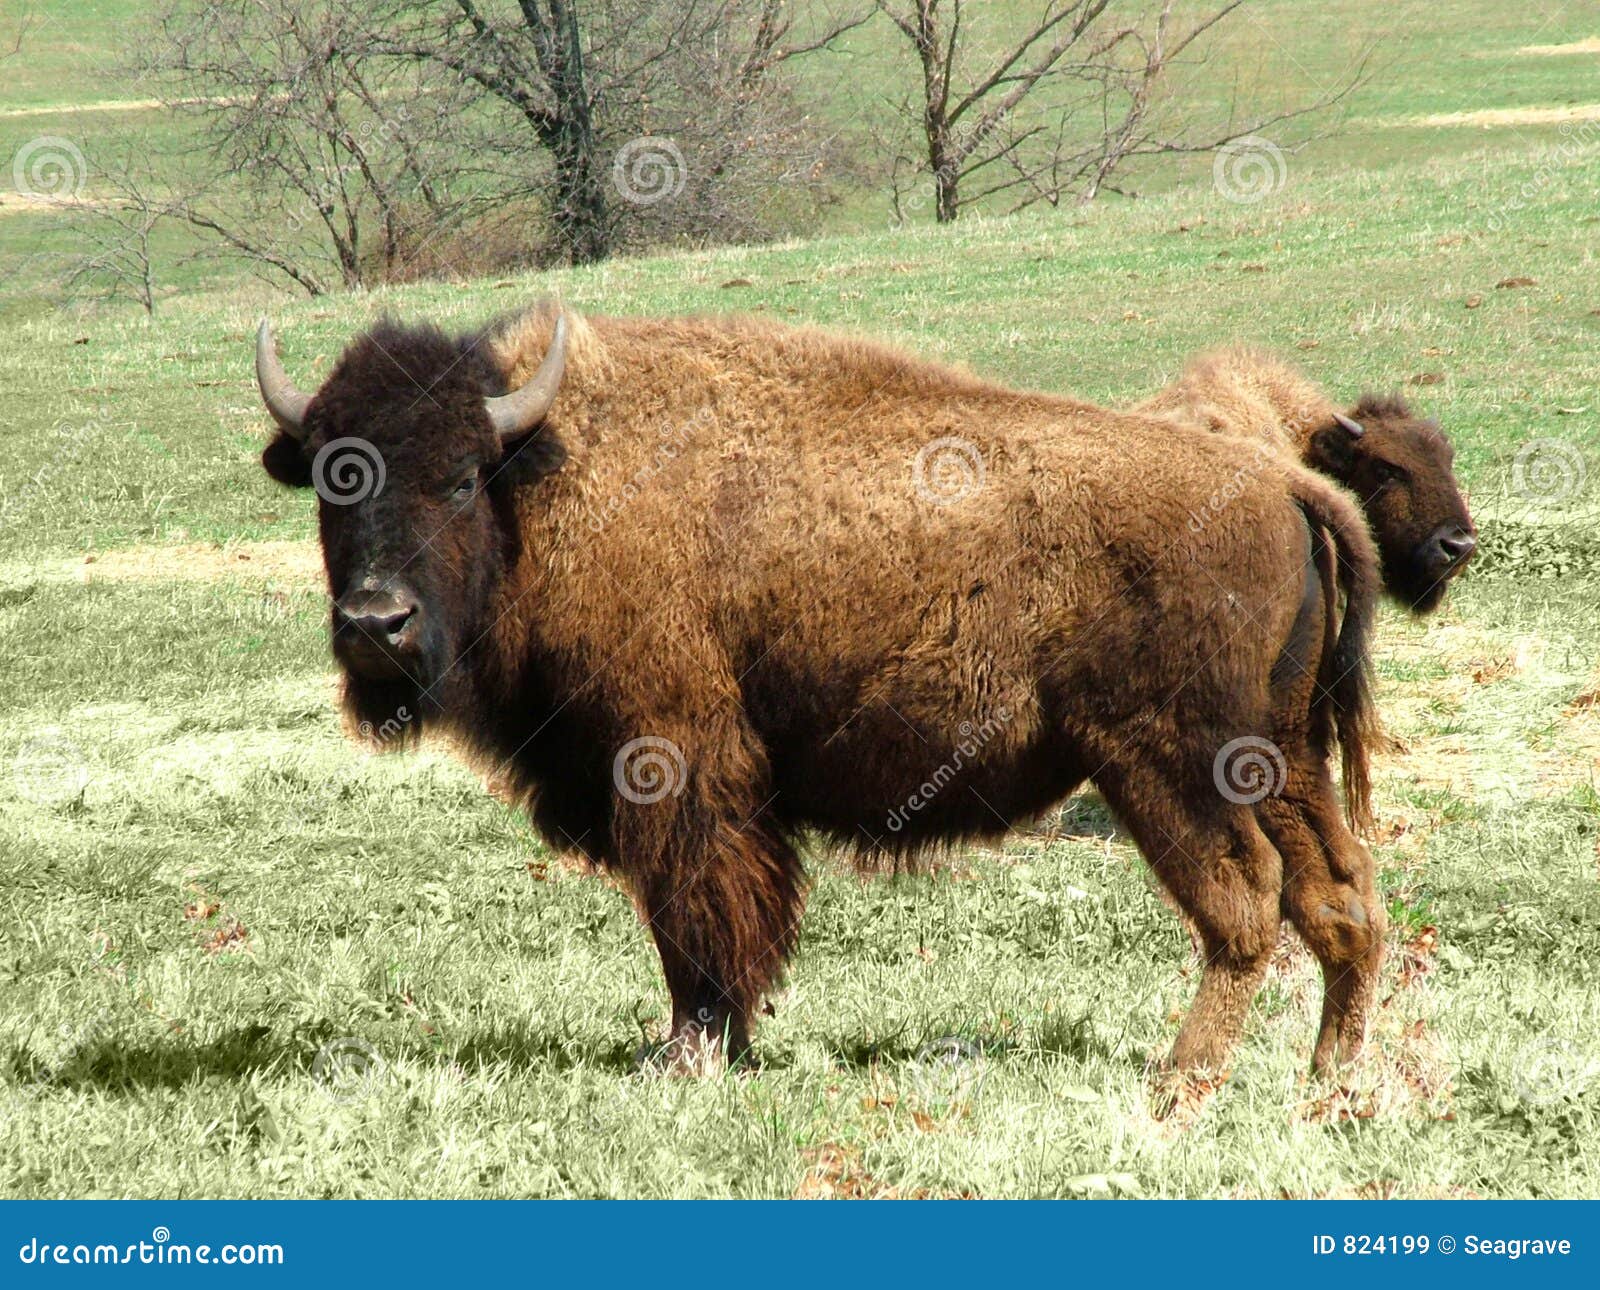 Buffalo Royalty Free Stock Images - Image: 824199